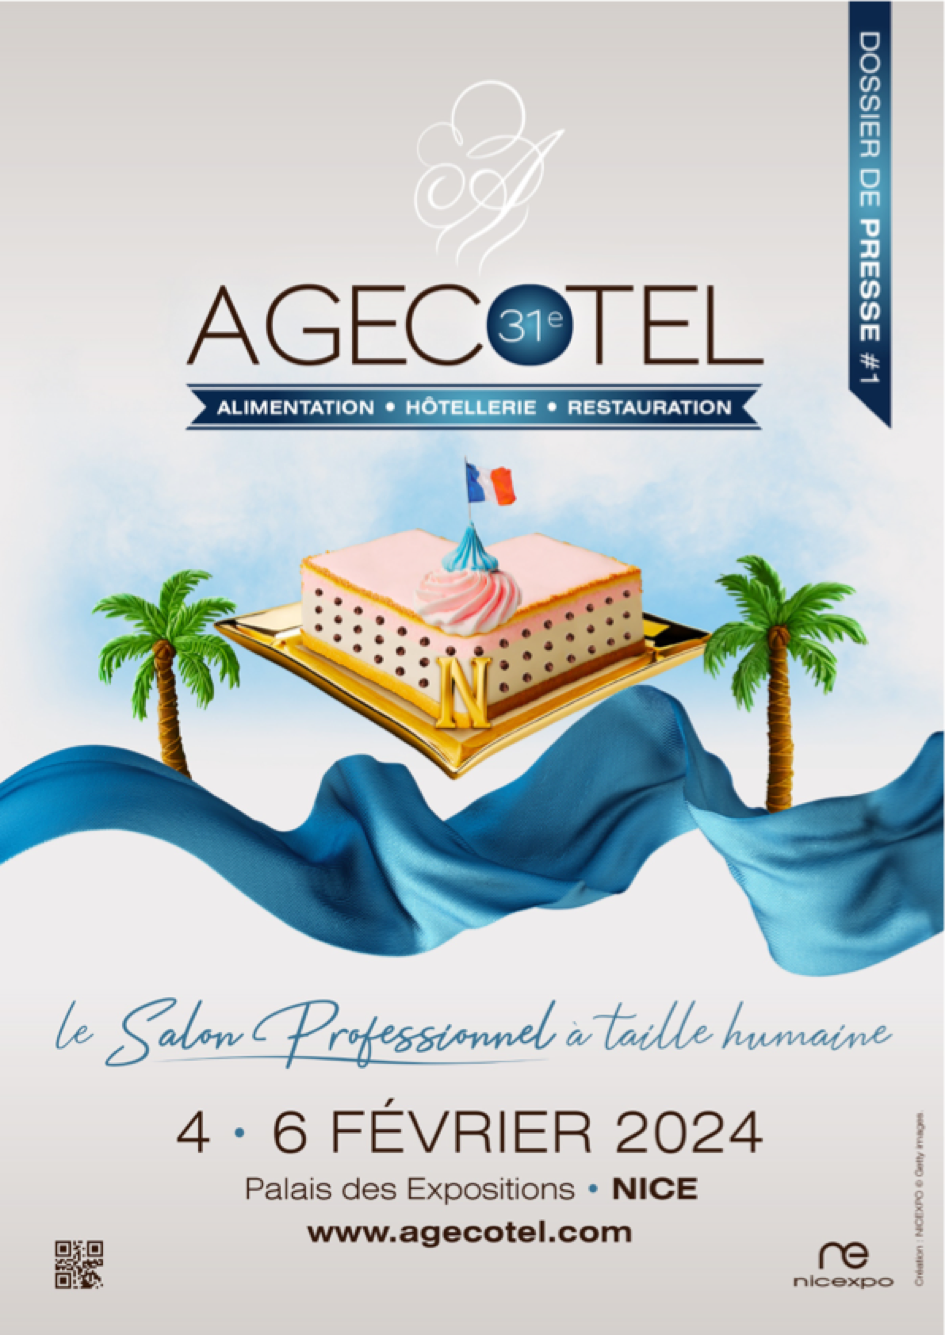 Agecotel de retour à Nice en février 2024